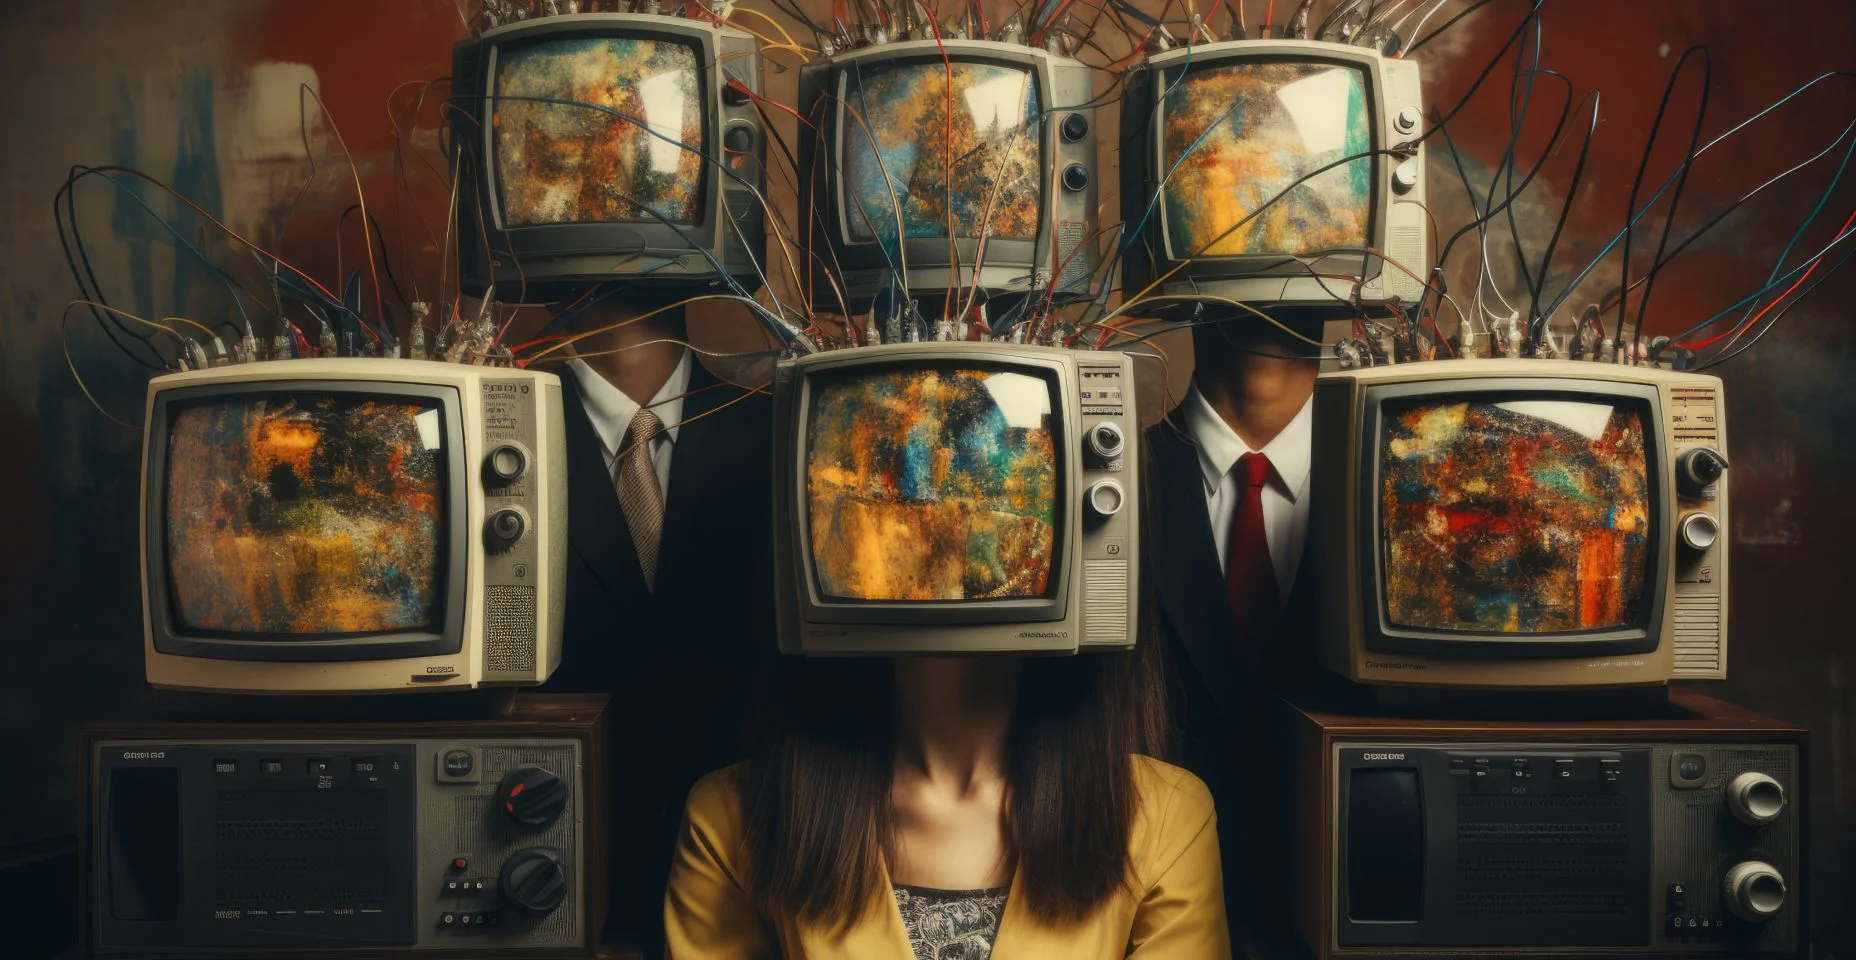 Uma colagem arrepiante de figuras humanas com cabeças de TV retrô, parecendo zumbis, retratando a censura, a desinformação e o seguimento cego da mídia de massa.